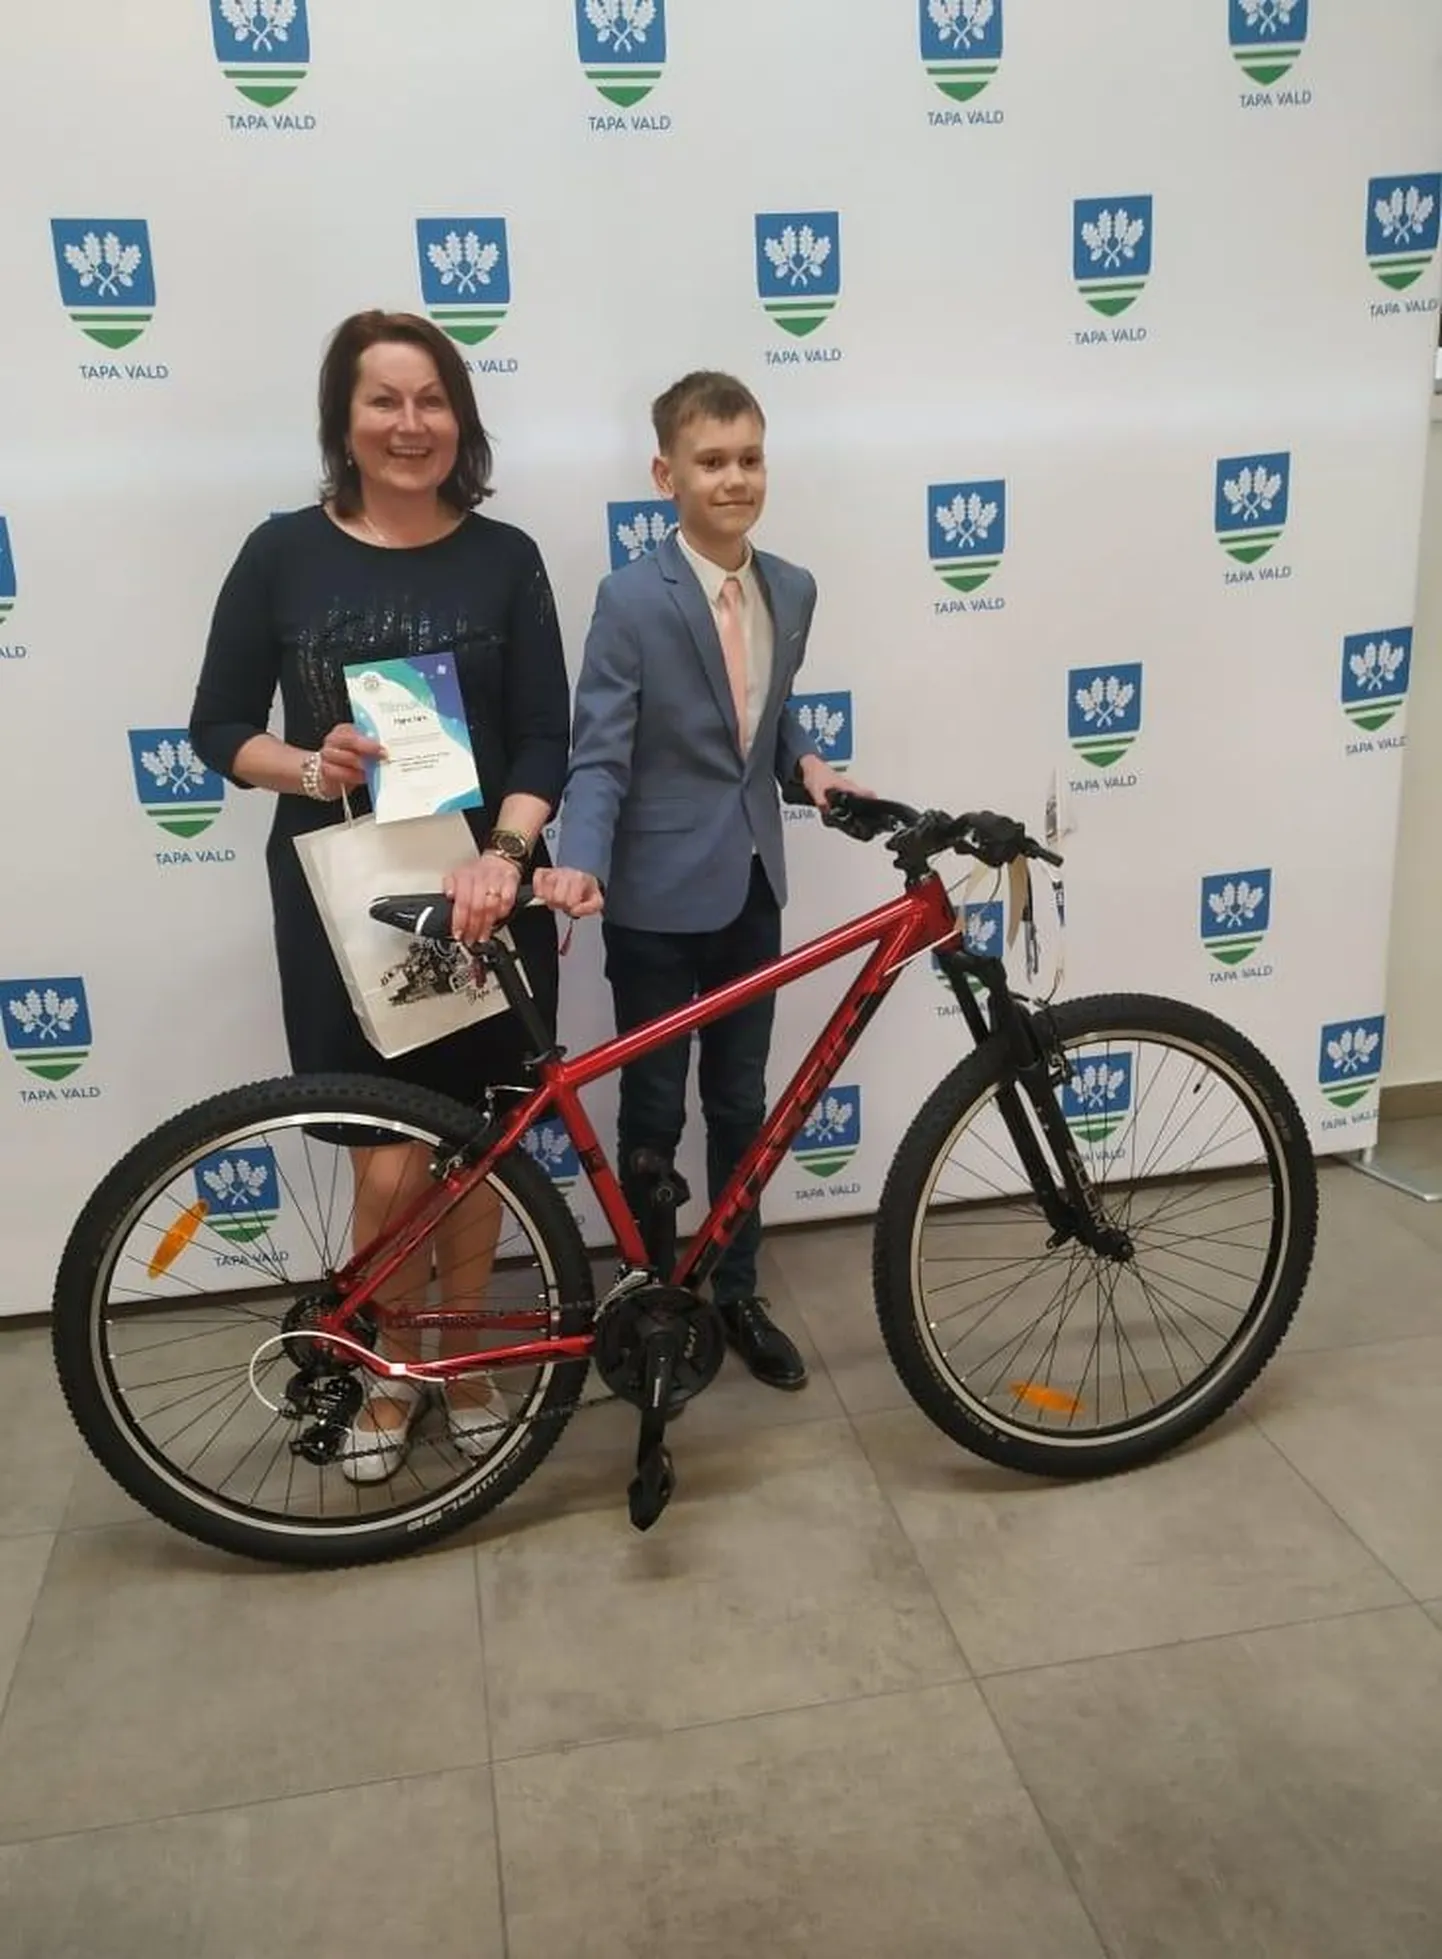 Võitja Oliver Keel sai auhinnaks jalgratta. «Oliveril oli ratta üle väga hea meel,» lausus muusikaõpetaja Maire Nirk.